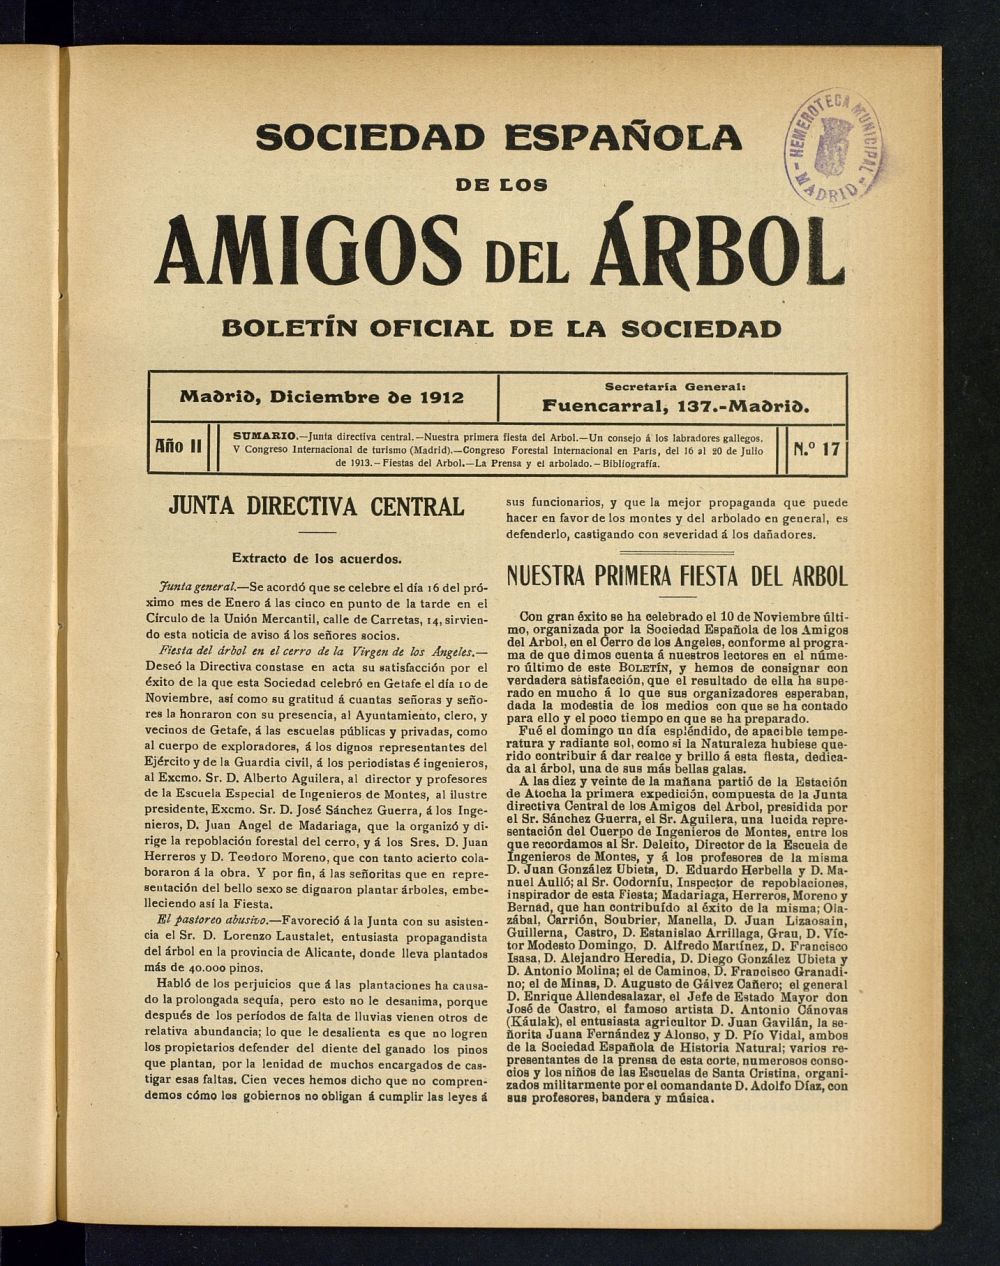 Boletn Comisin organizadora de la Sociedad Espaola de los amigos del rbol de diciembre de 1912